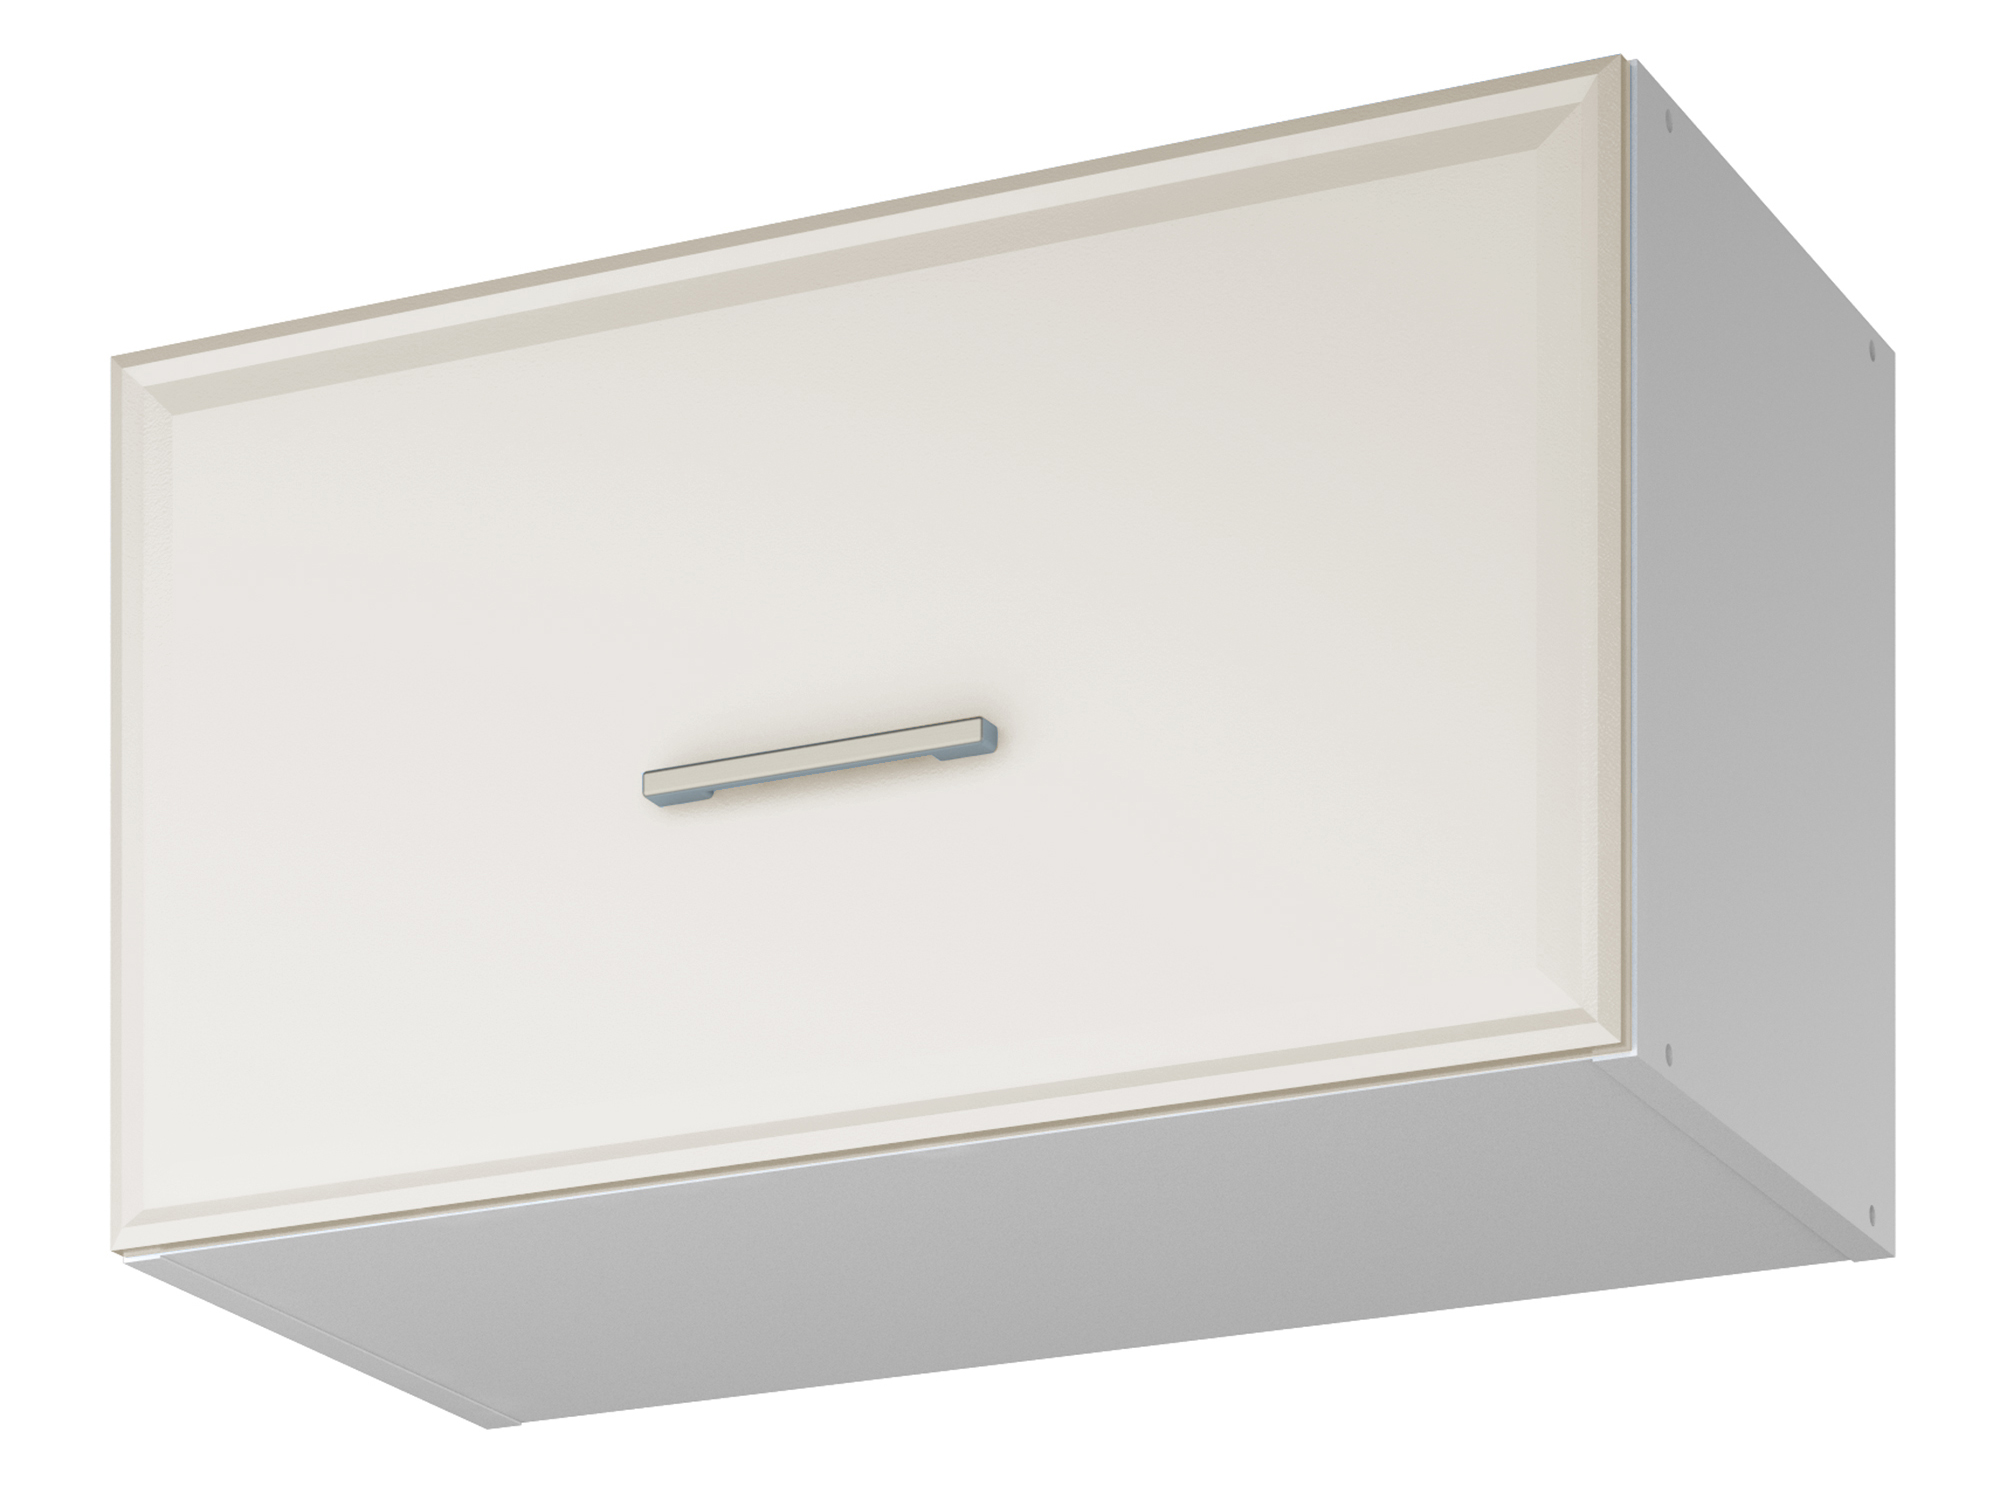 Шкаф навесной для вытяжки Greta 60 см Светлый, , Белый, МДФ, ЛДСП шкаф напольный угловой greta светлый белый мдф лдсп